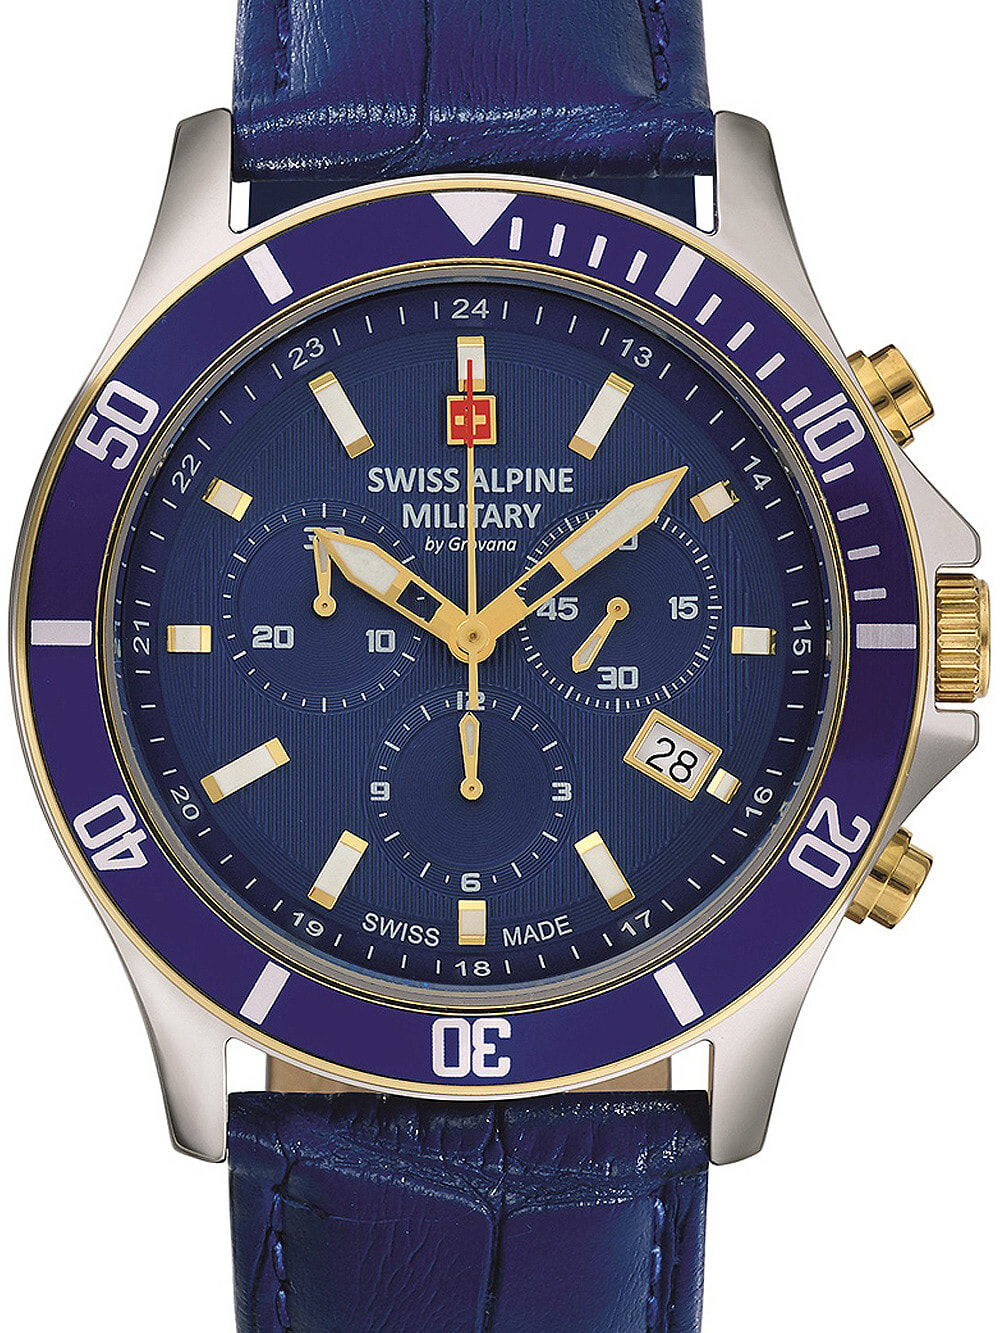 Мужские наручные часы с синим кожаным ремешком Swiss Alpine Military 7022.9545 chronograph 42mm 10ATM